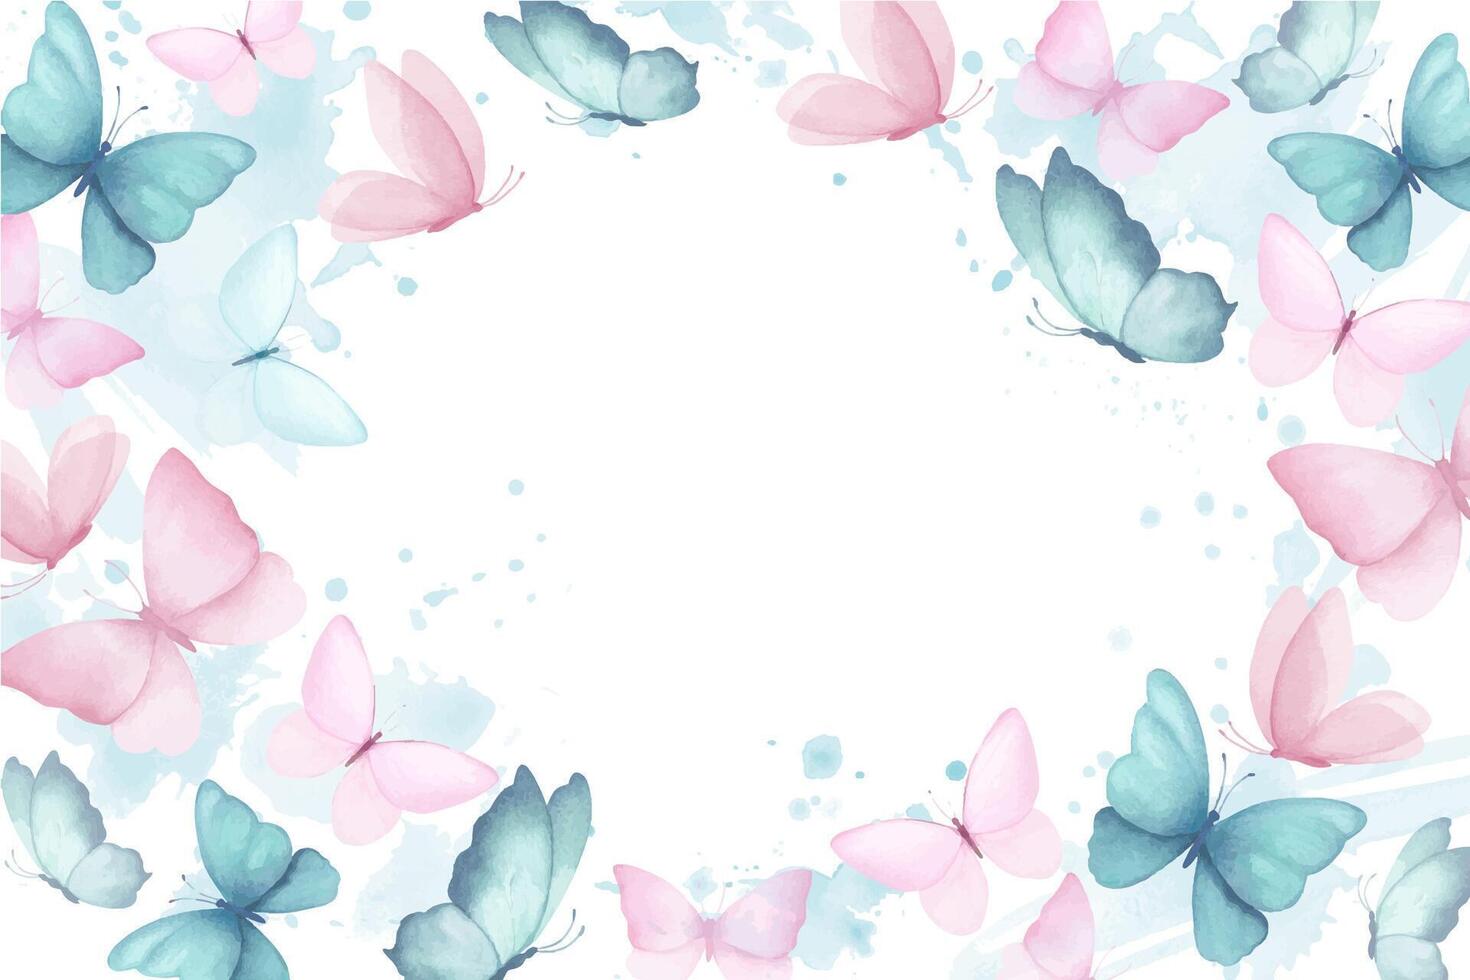 Aquarell rechteckig Rahmen oder Banner mit Illustration von zart Blau und Rosa Schmetterlinge mit Aquarell abstrakt spritzt Flecken im runden. handgefertigt, isoliert vektor